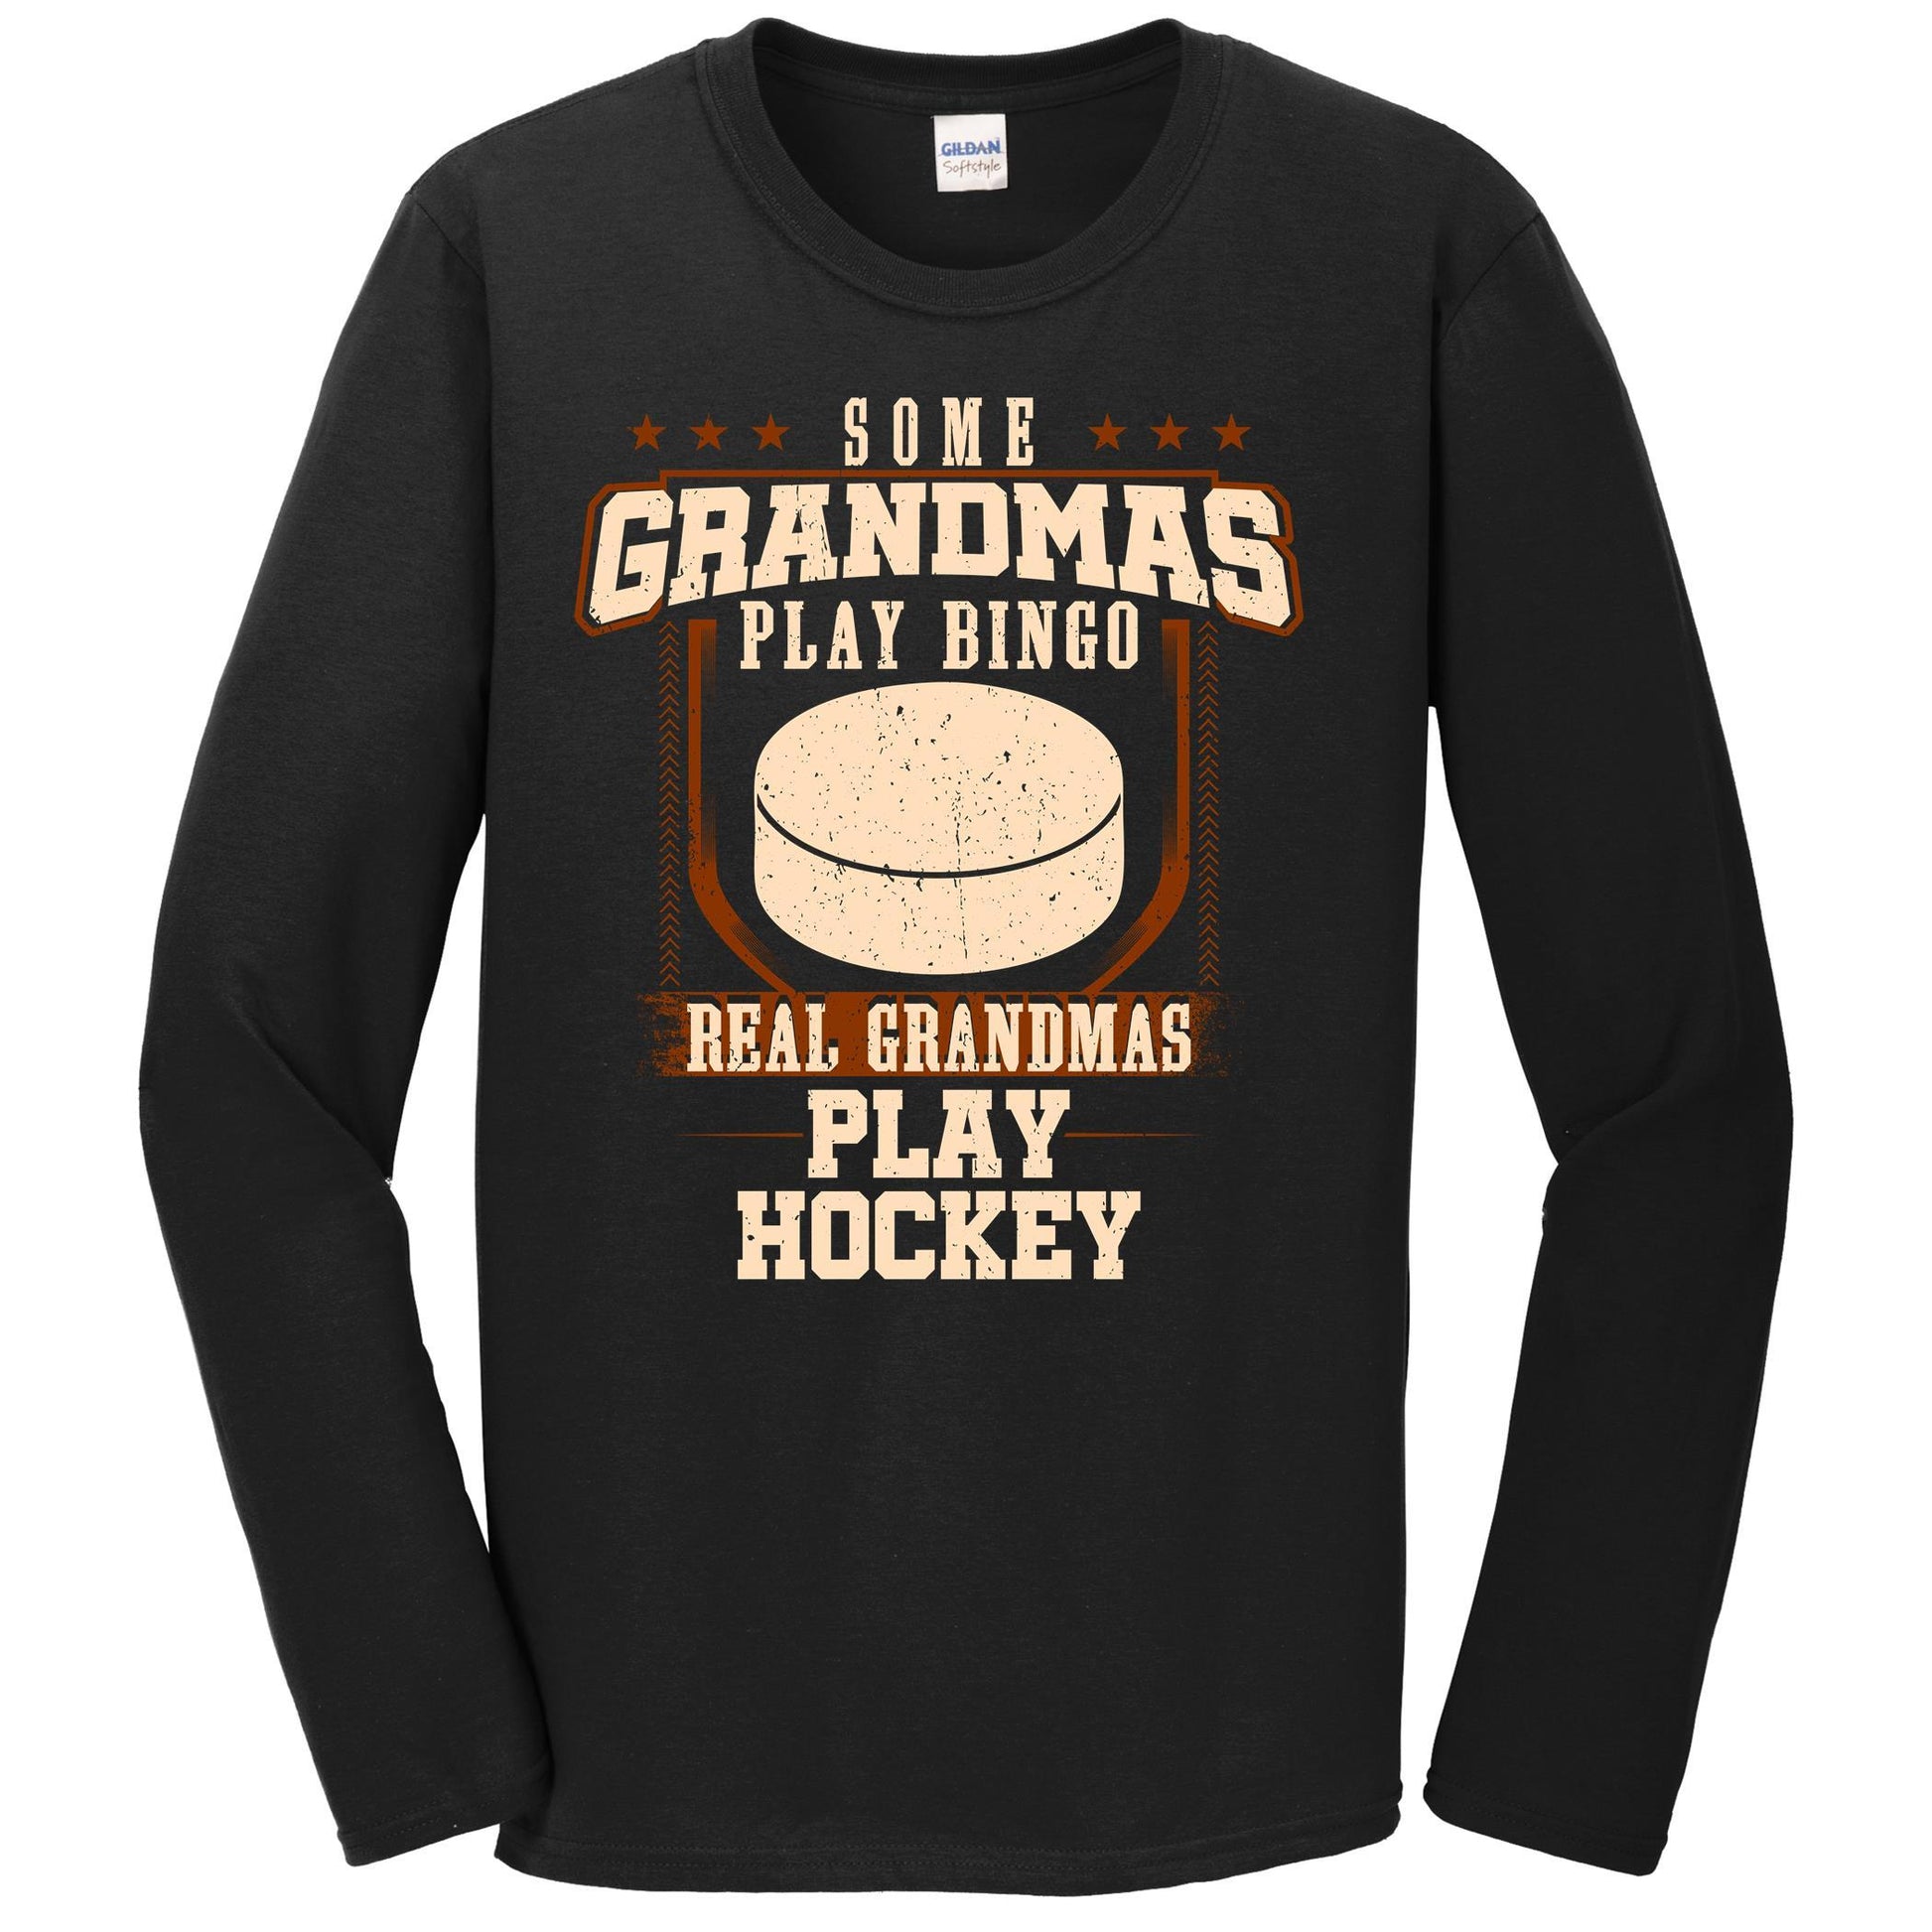 Some Grandmas Play Bingo Real Grandmas Play Hockey Long Sleeve Shirt